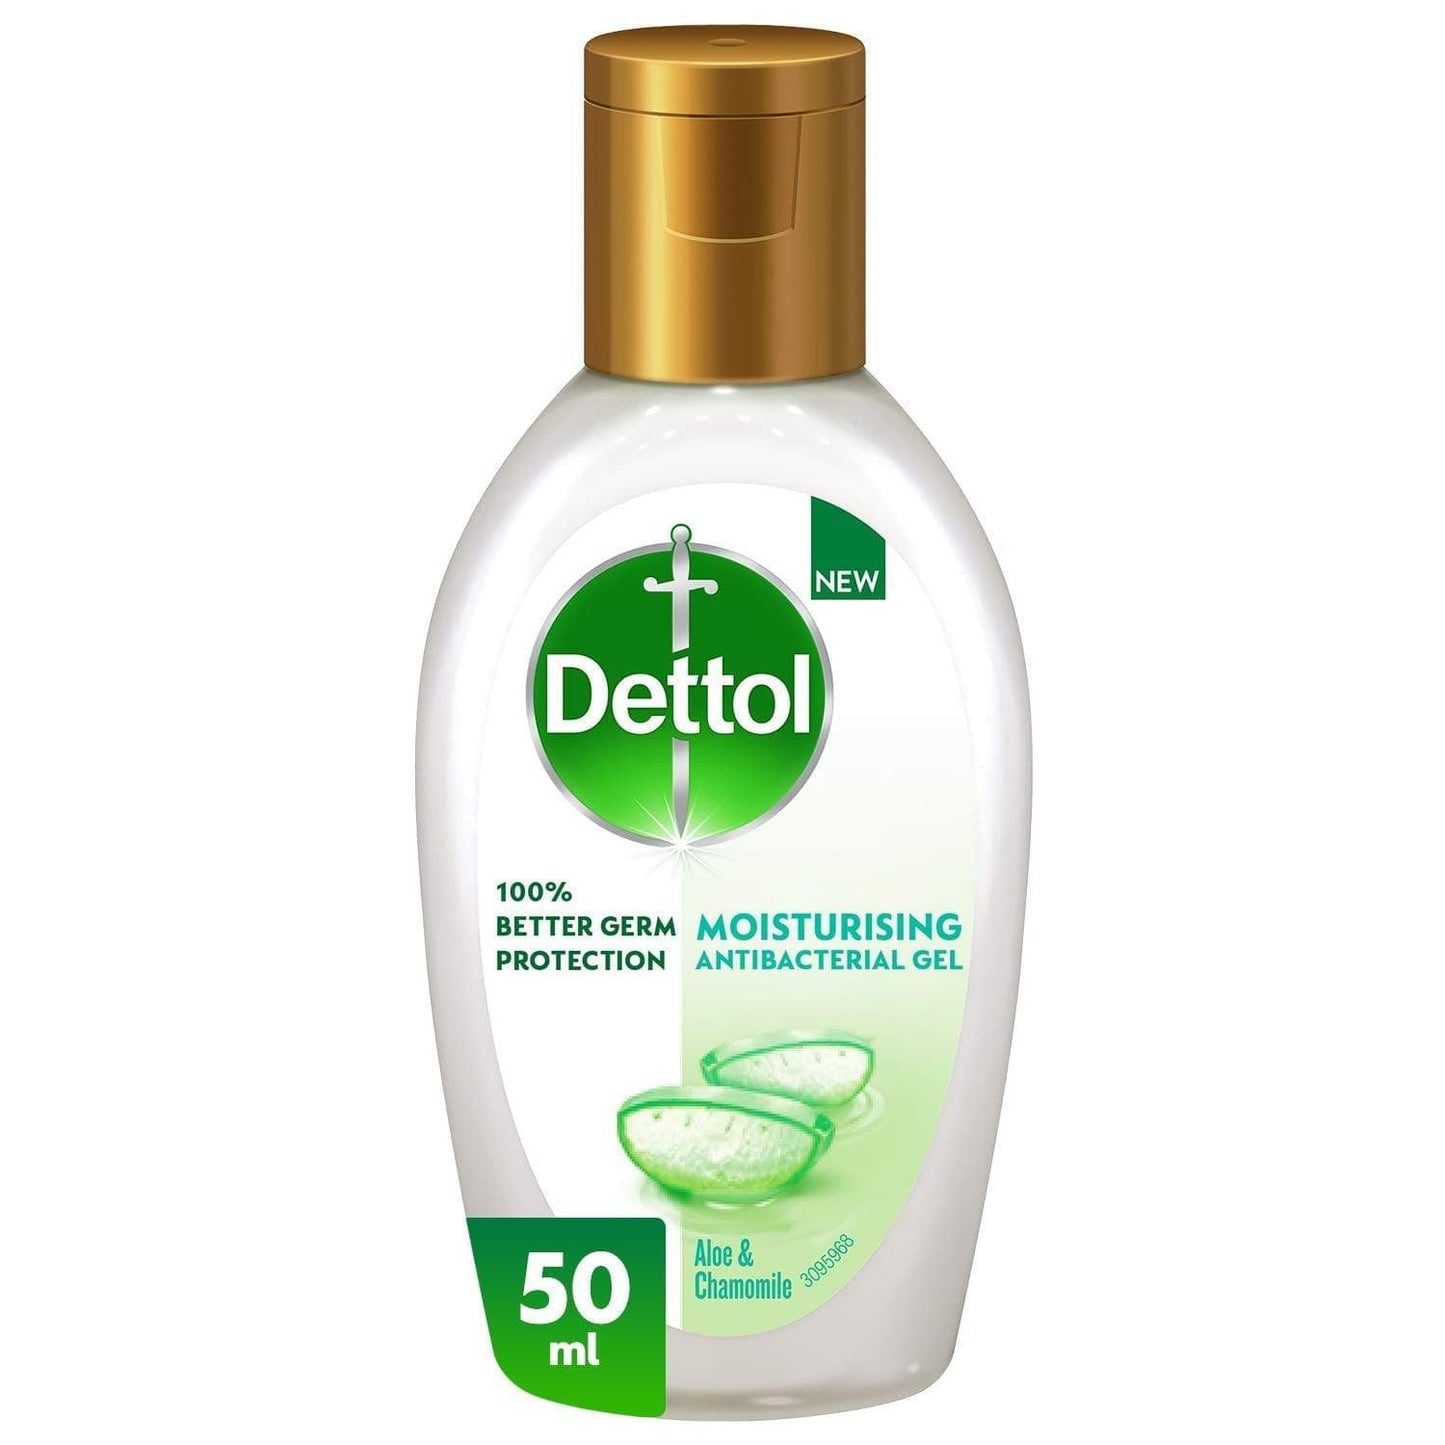 Dettol Anti-bacterial Hand Gel 50ml - welzo